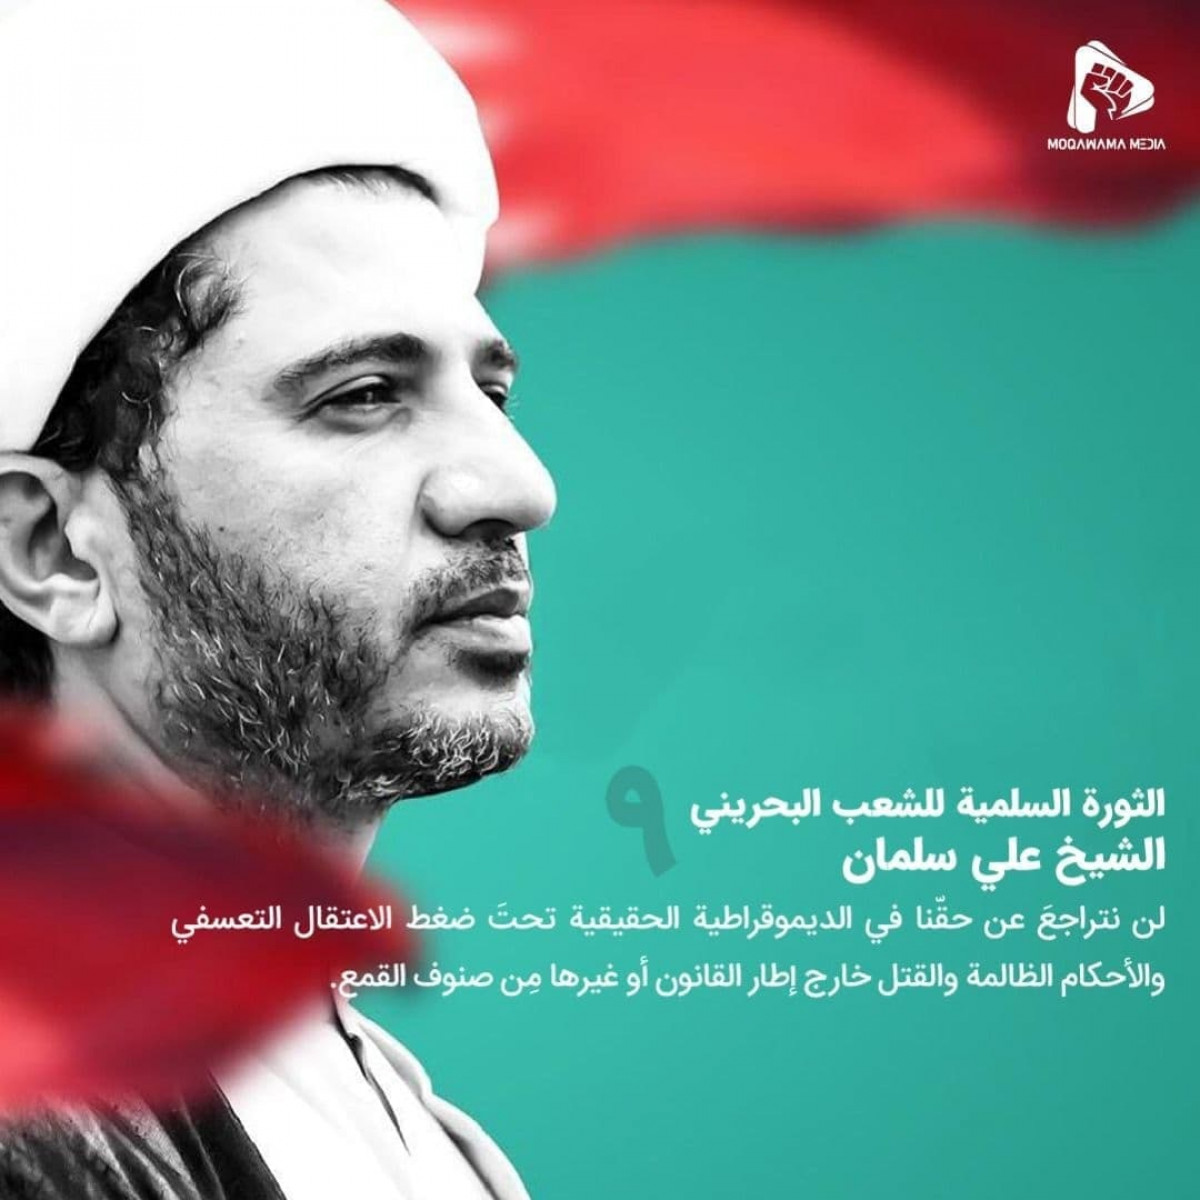 الثورة السلمية للشعب البحريني / الشیخ علي سلمان 1